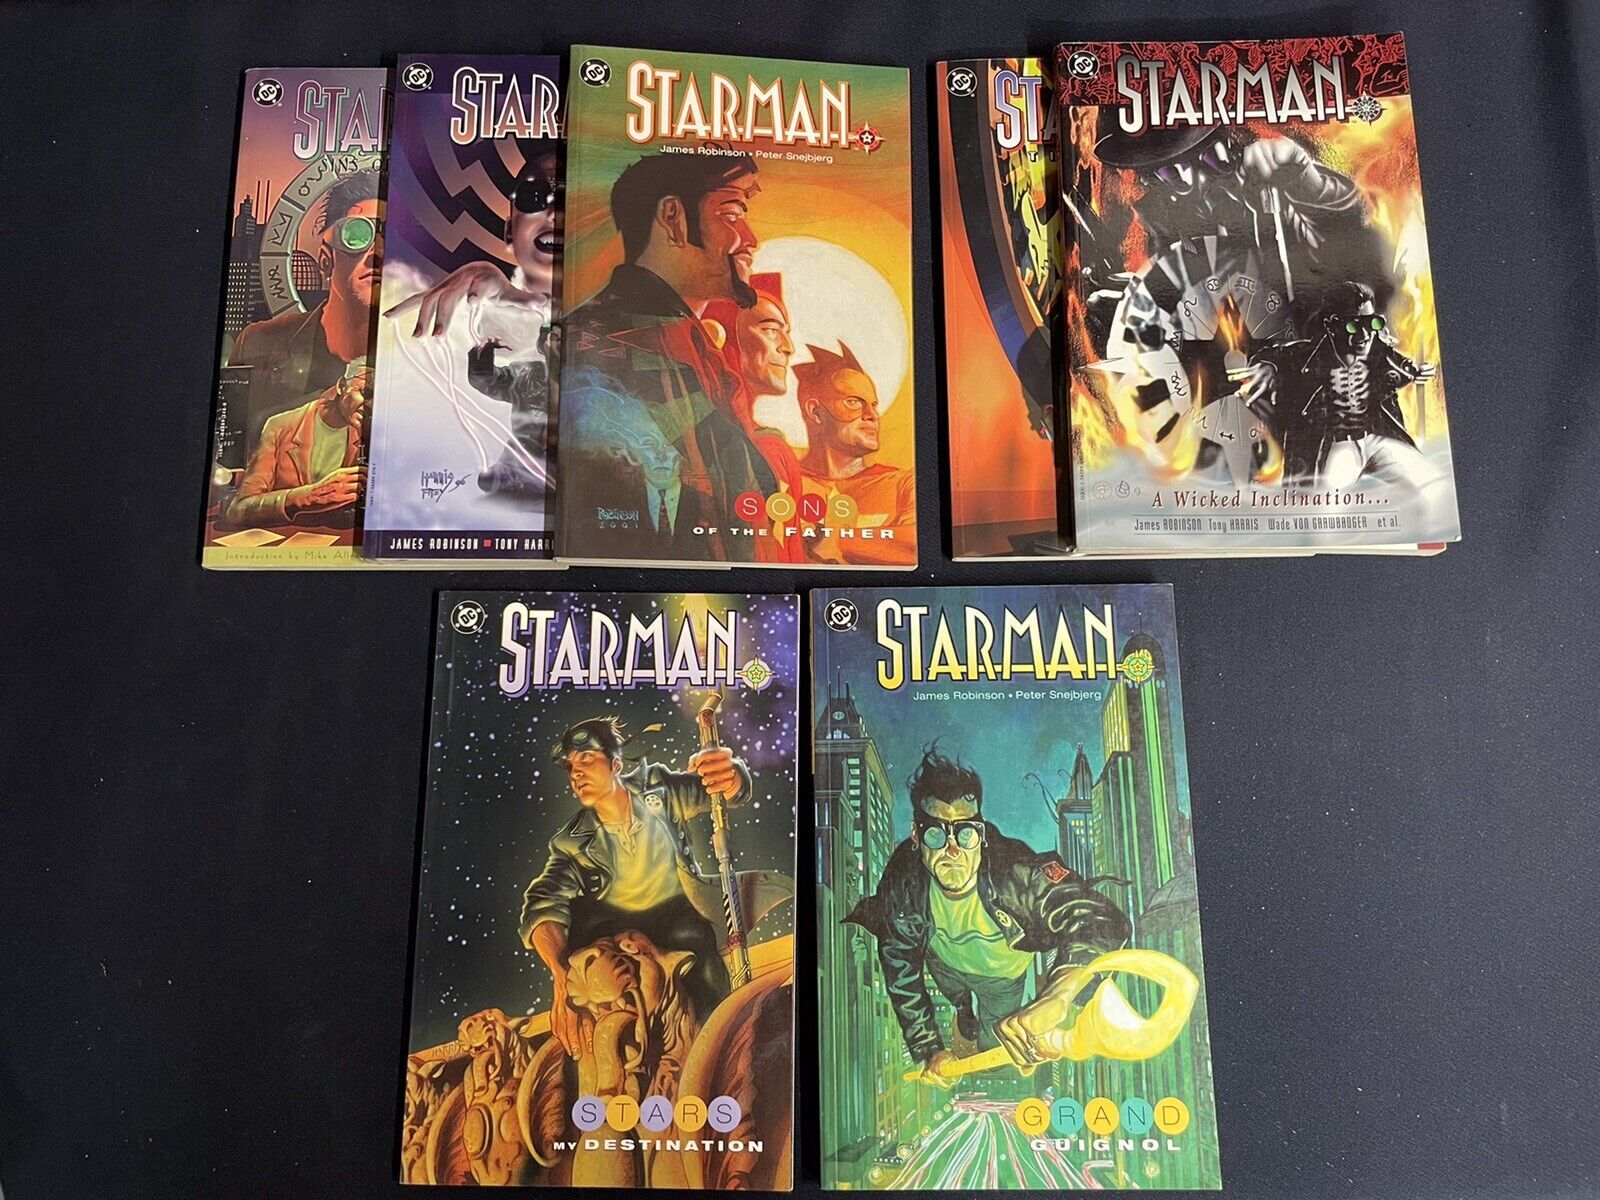 Starman Trades Vol. 1,2,3,4,8,9,10 (Missing vol. 5-7) 7 books total 